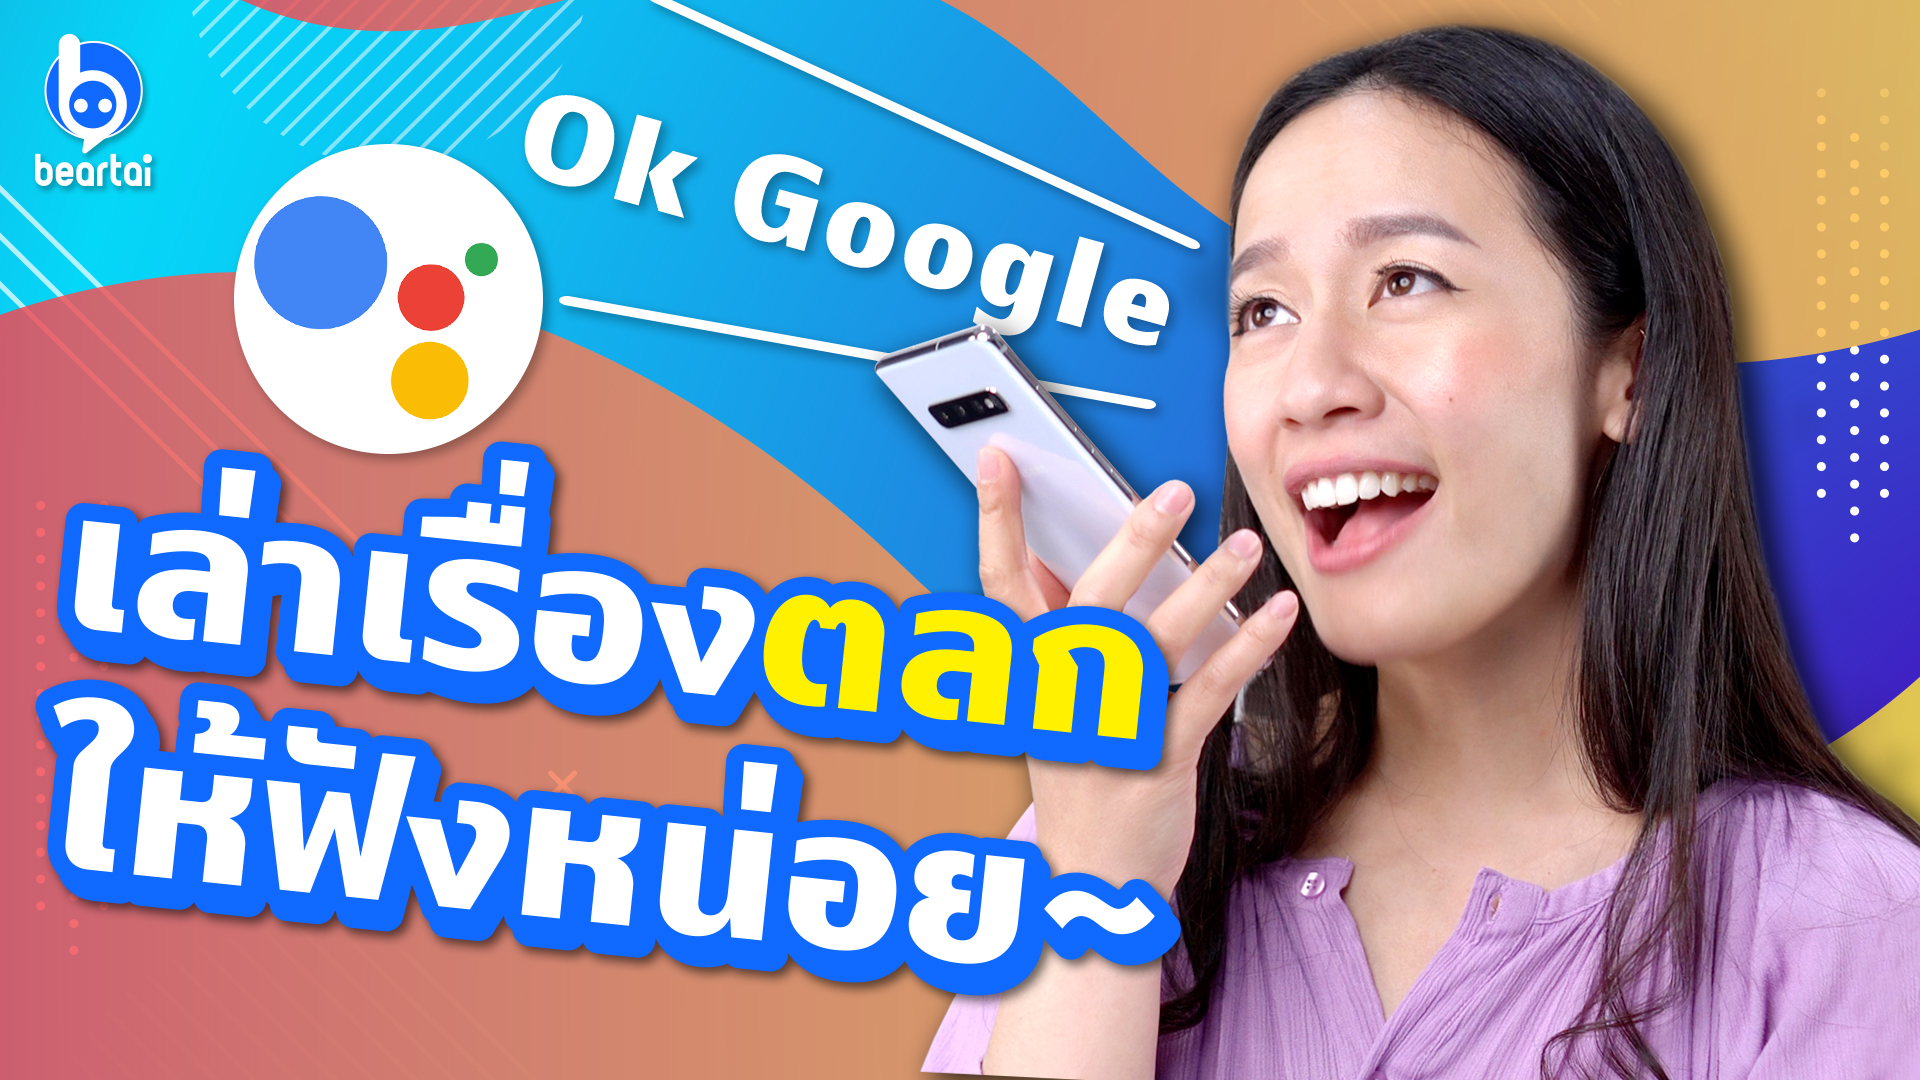 Google Assistant ฟังไทยเก่งขึ้นกว่าเดิมเยอะ! ไม่เชื่อหรอ? เดี๋ยวผึ้งเทสให้ดูเอง